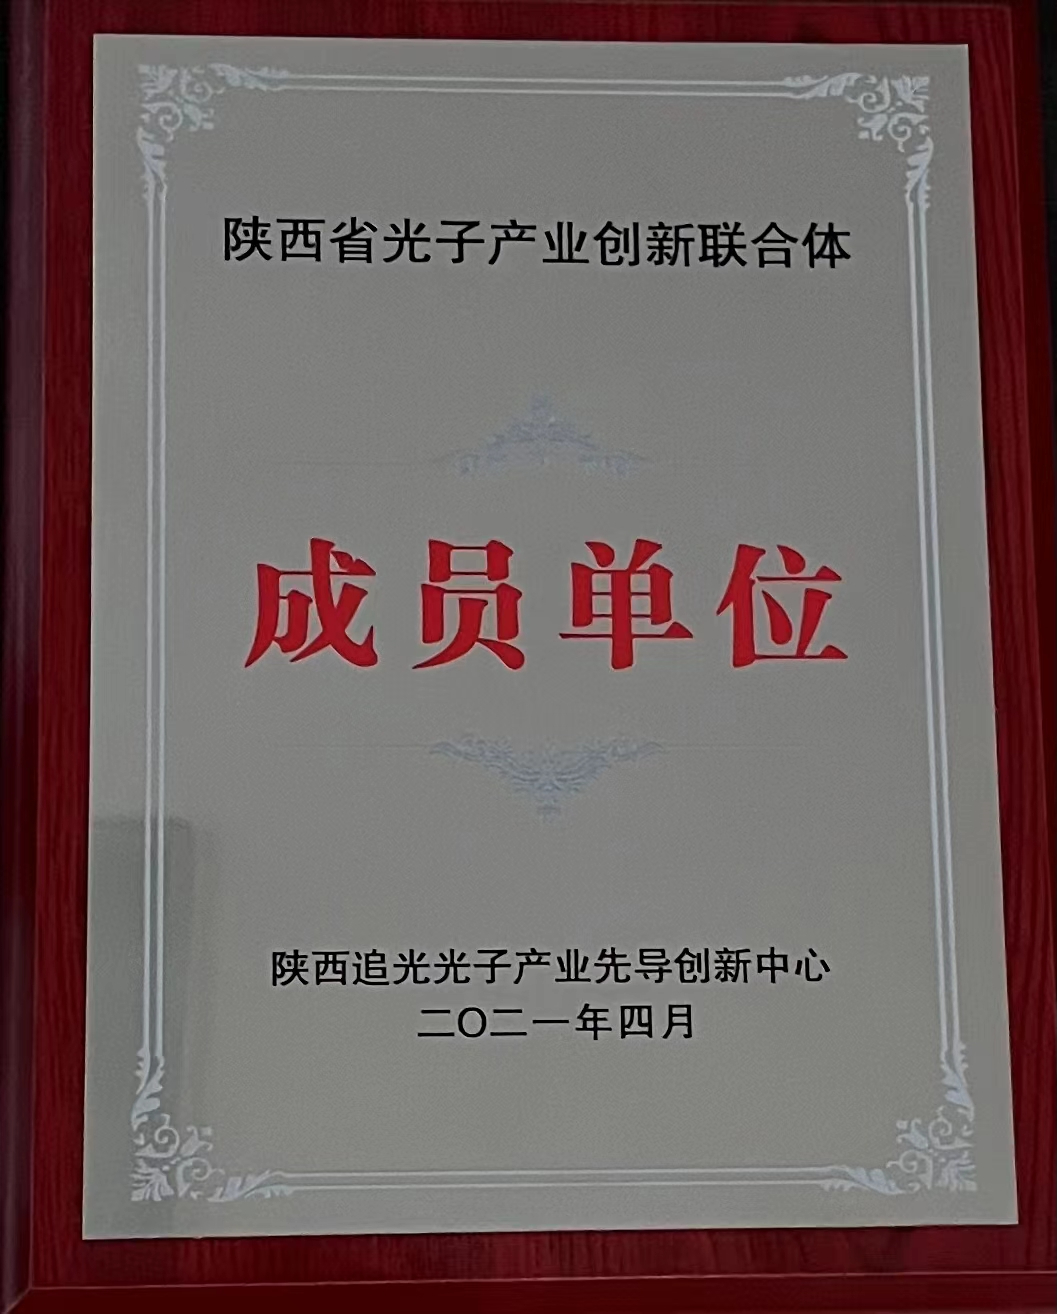 陕西省光子产业创新联合体成员单位